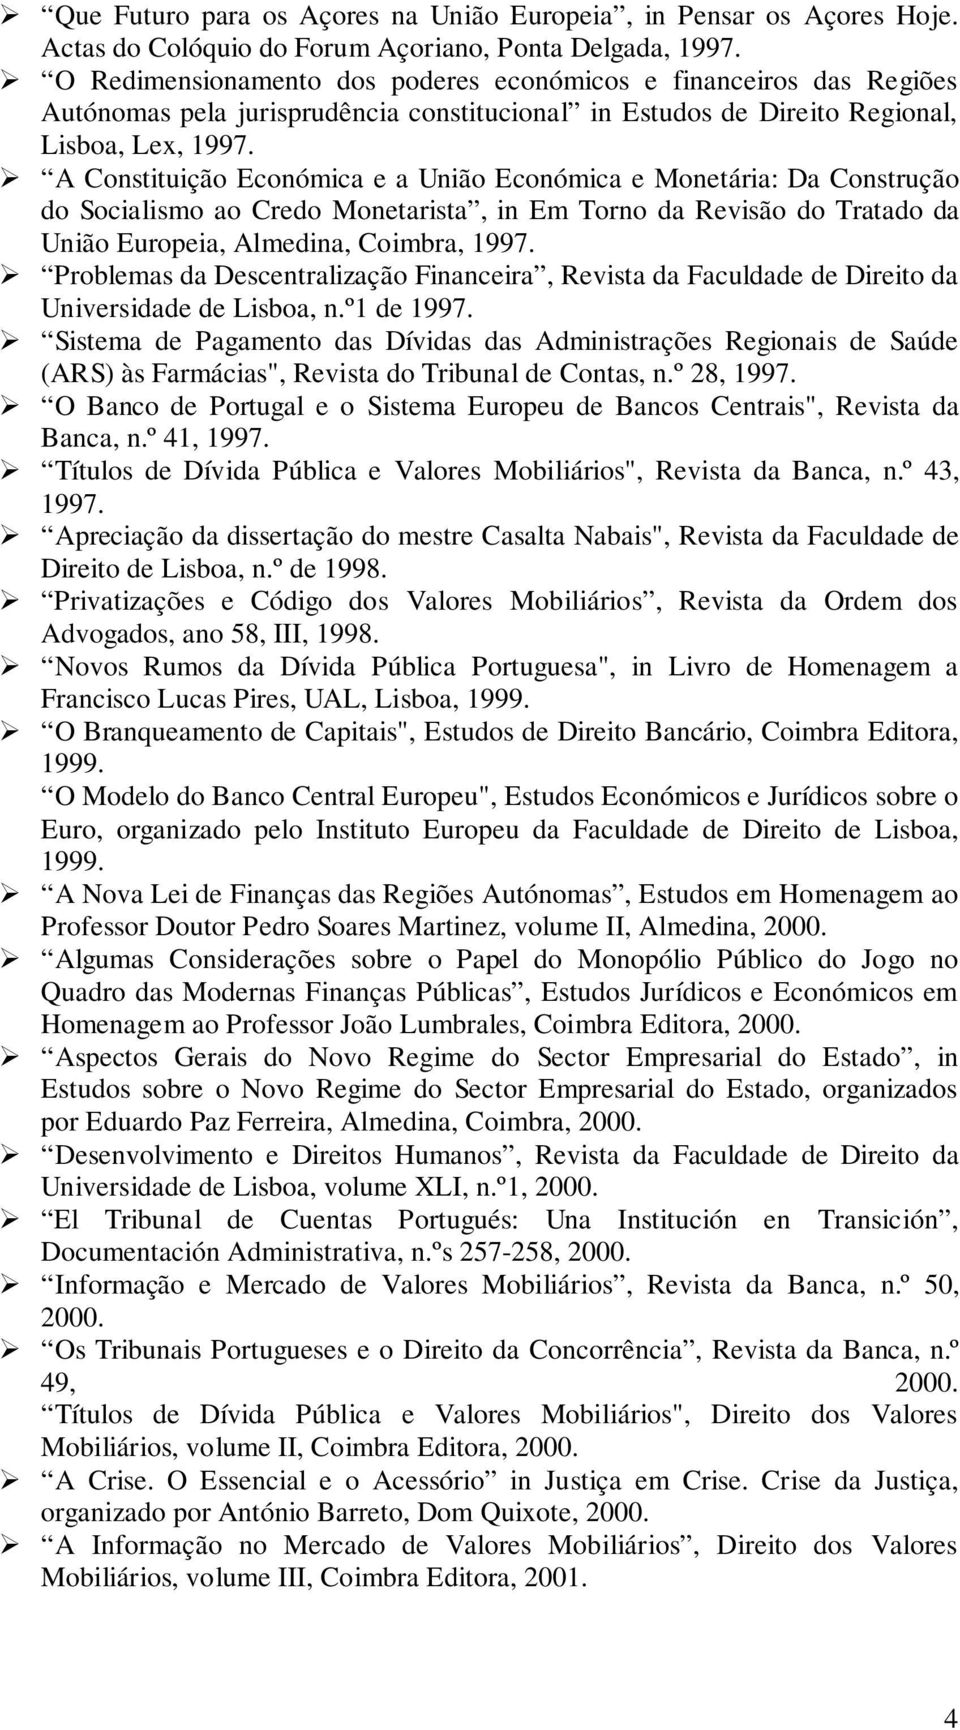 A Constituição Económica e a União Económica e Monetária: Da Construção do Socialismo ao Credo Monetarista, in Em Torno da Revisão do Tratado da União Europeia, Almedina, Coimbra, 1997.